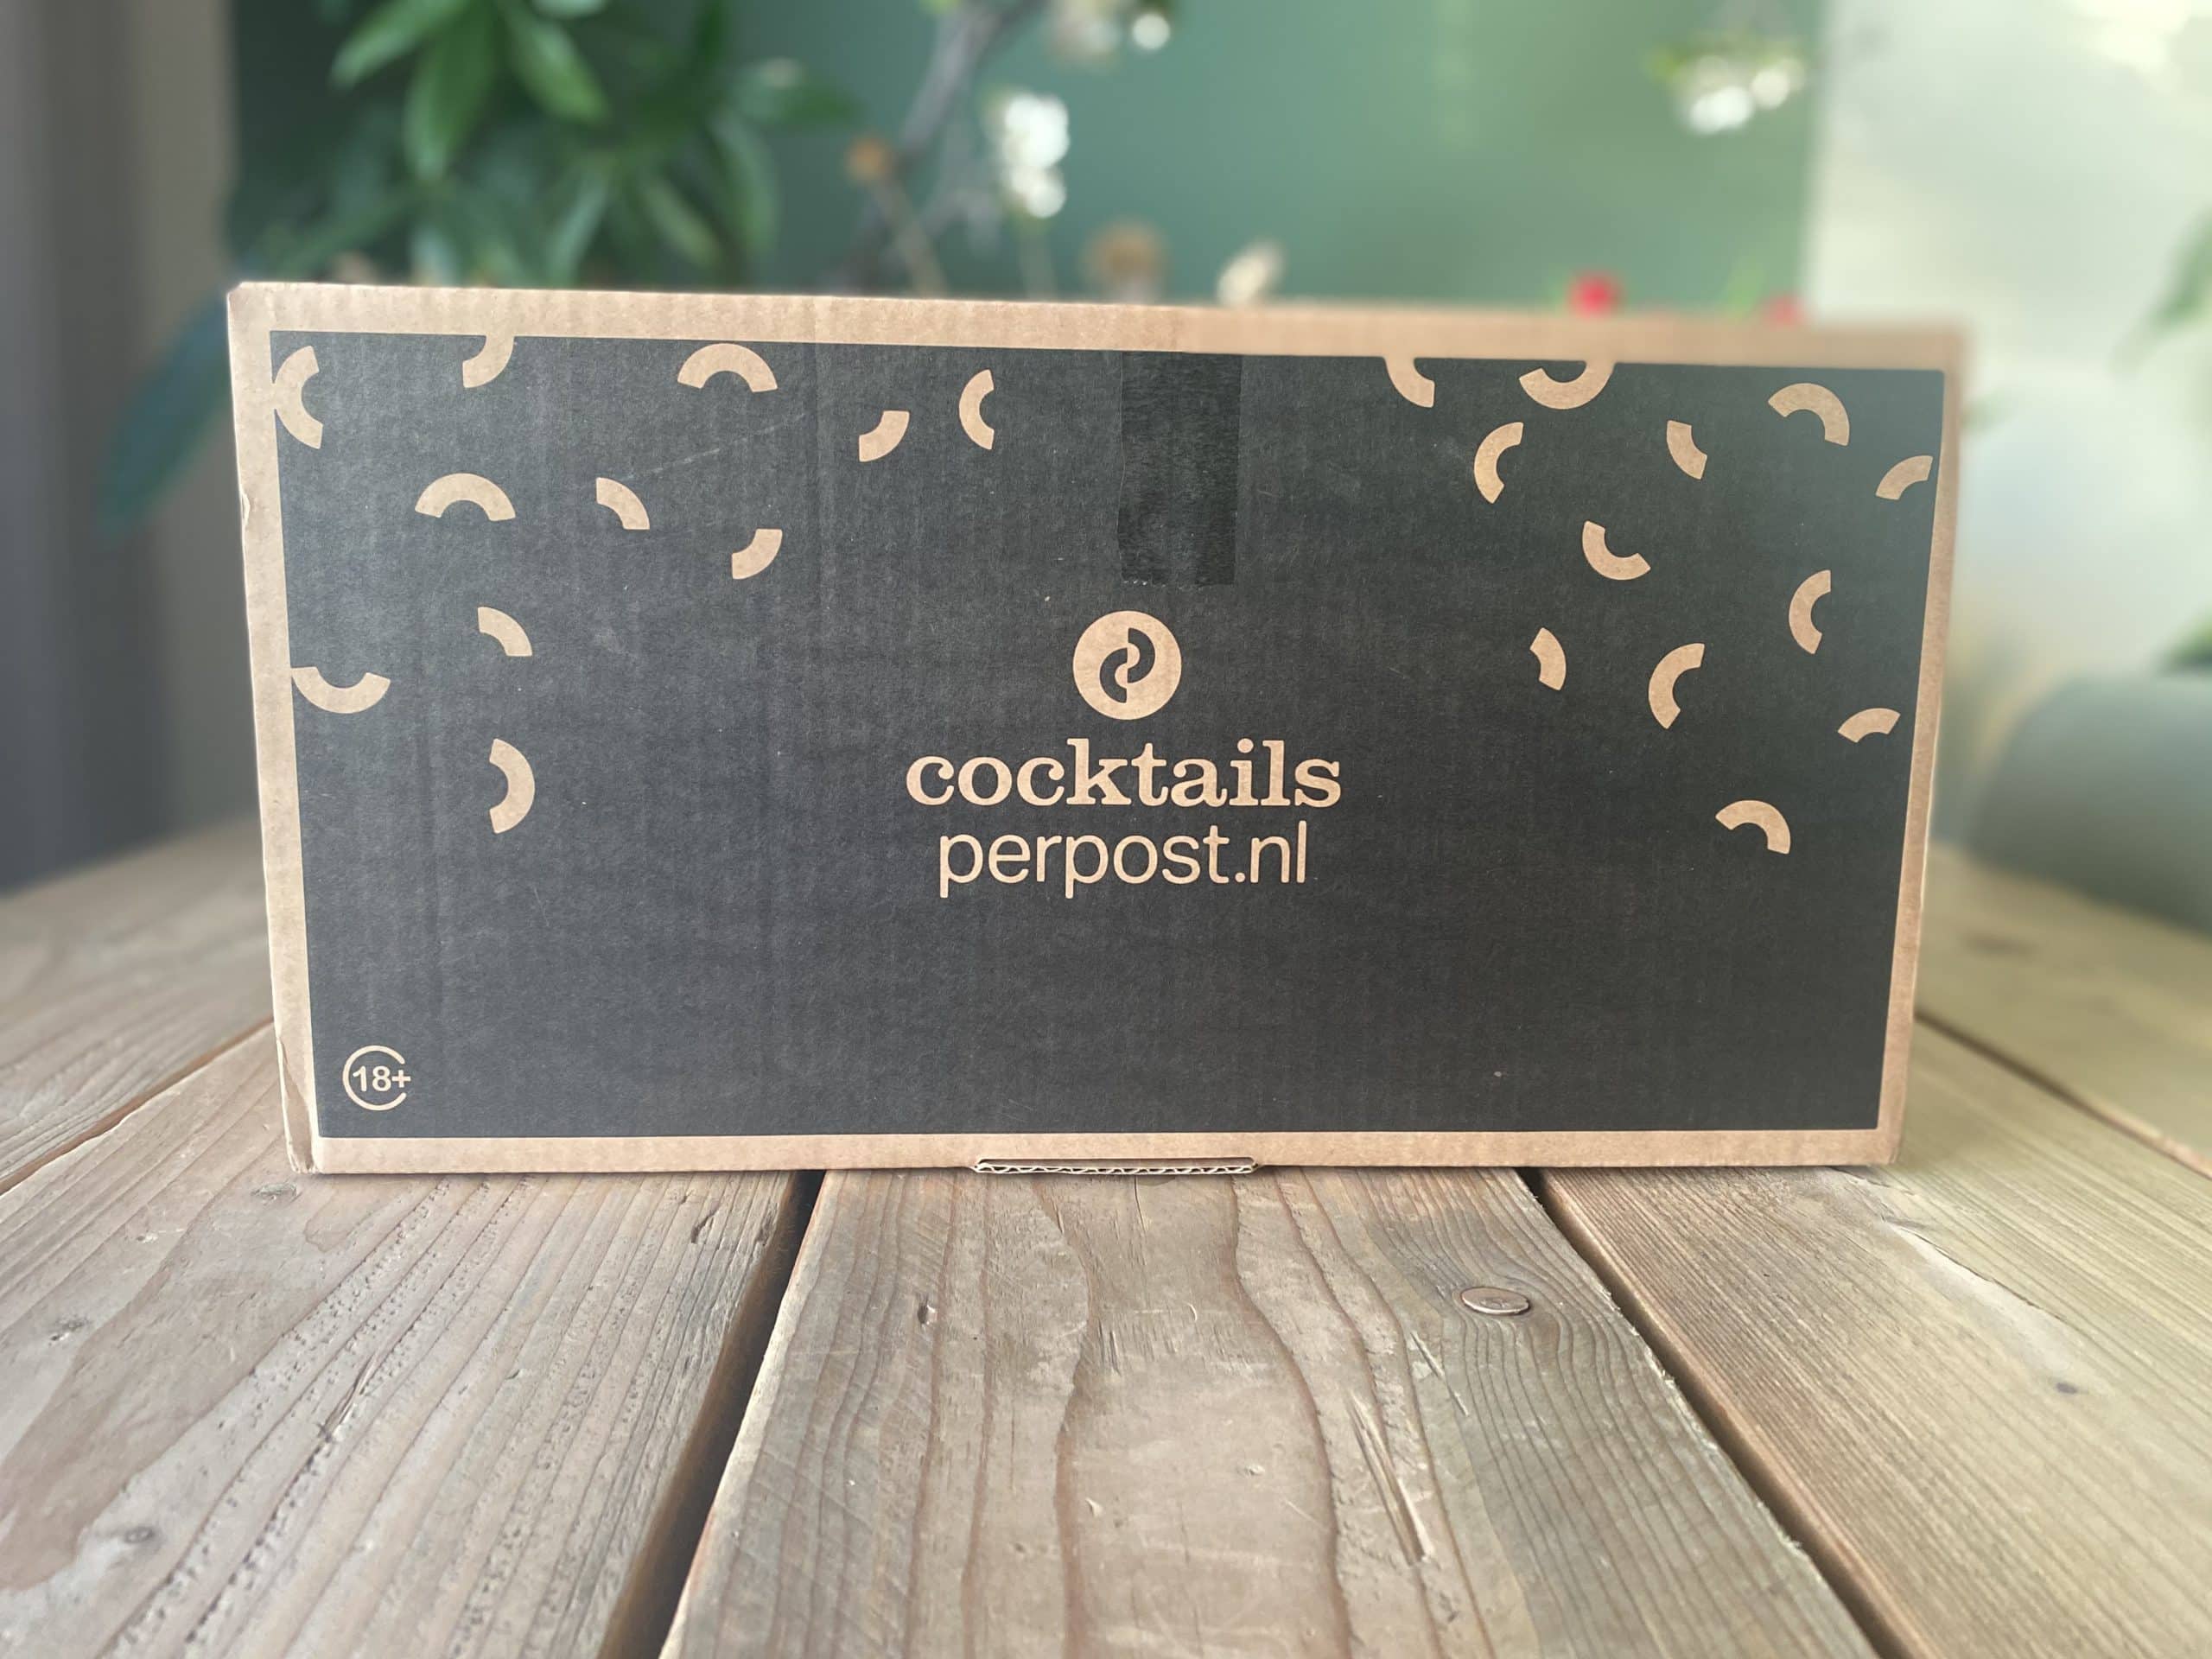 Cocktails thuisbezorgd: via deze website bestel je heerlijke cocktails